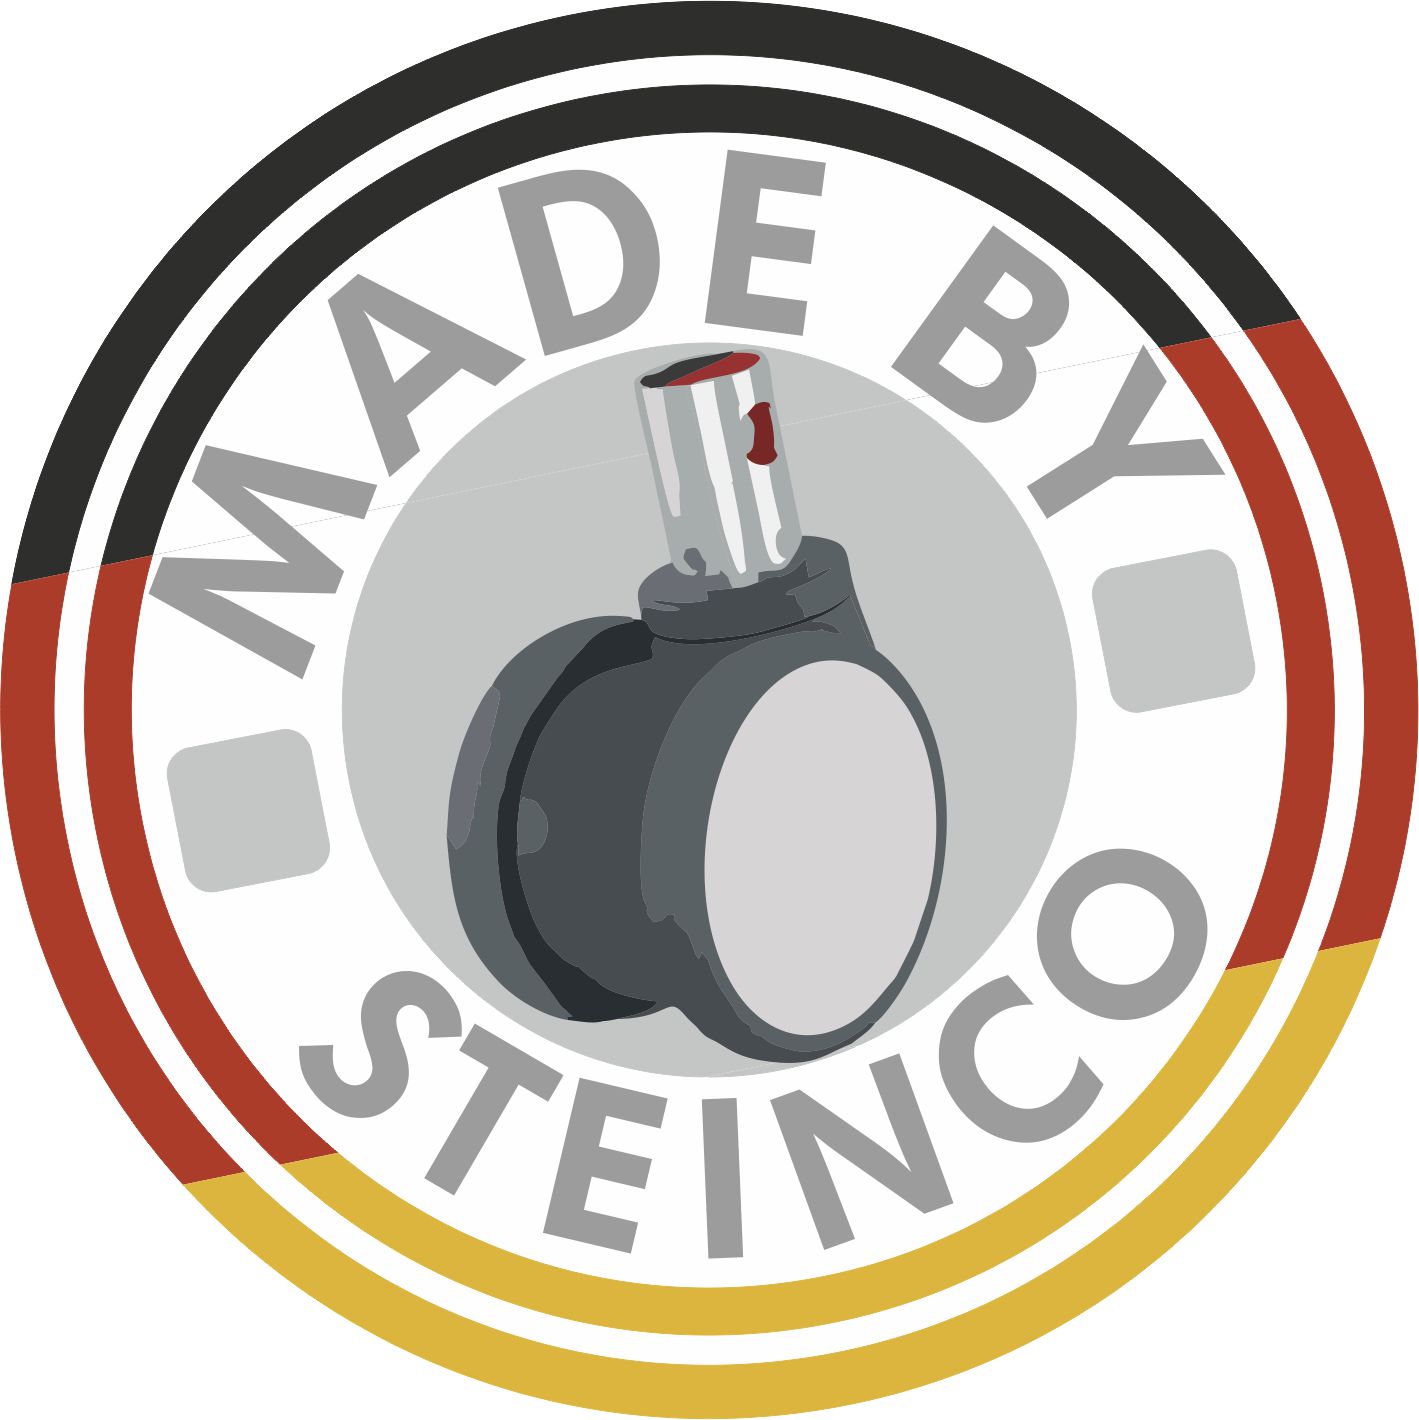 Hersteller Rollen und Räder - Made by STEINCO and Made in Germany